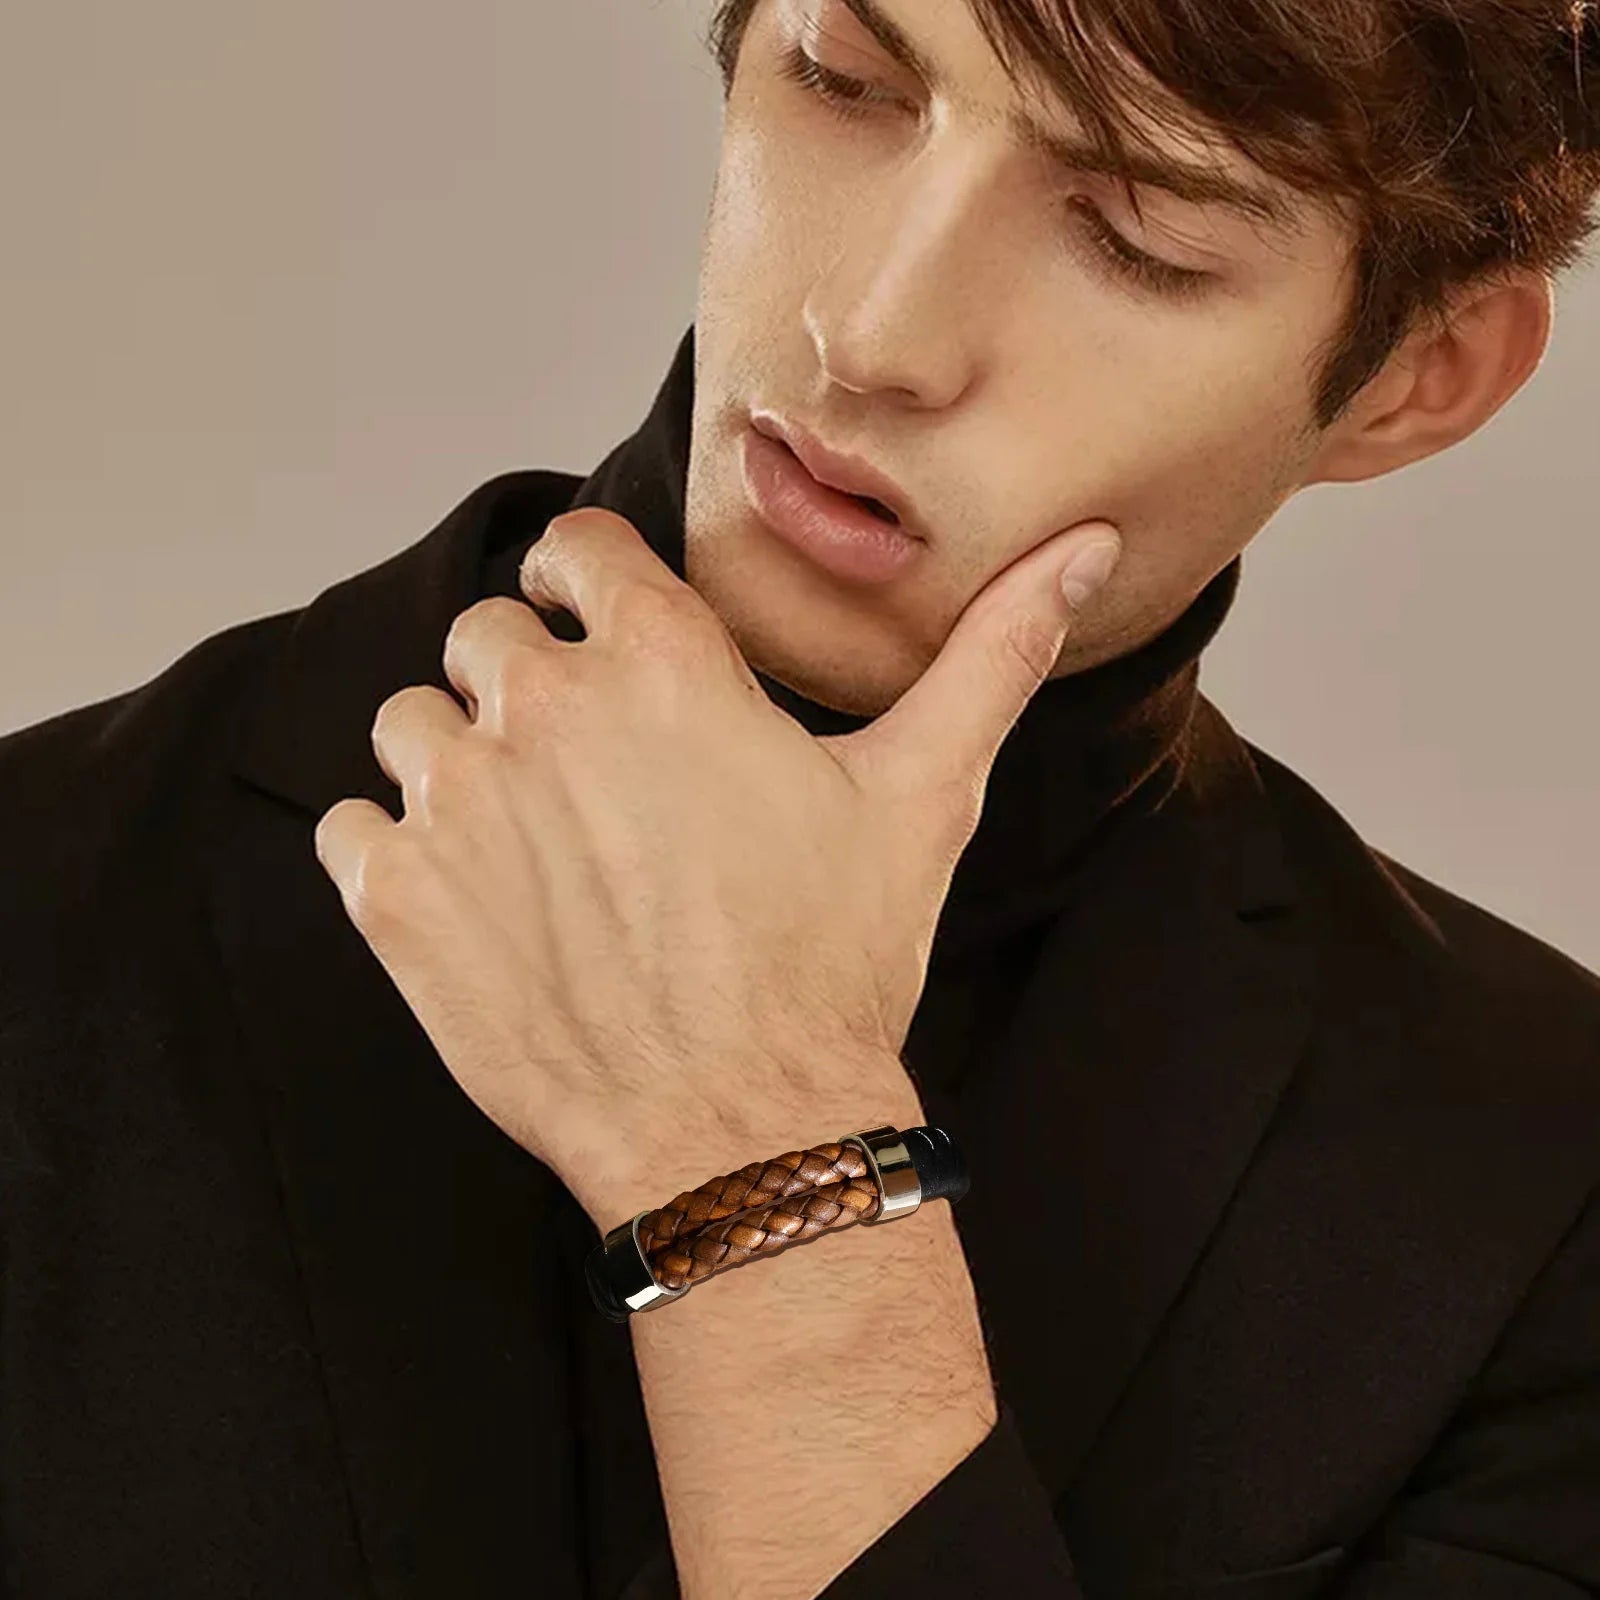 FZ Luxury Genuine Leather Black Braided Bracelet - FZwear